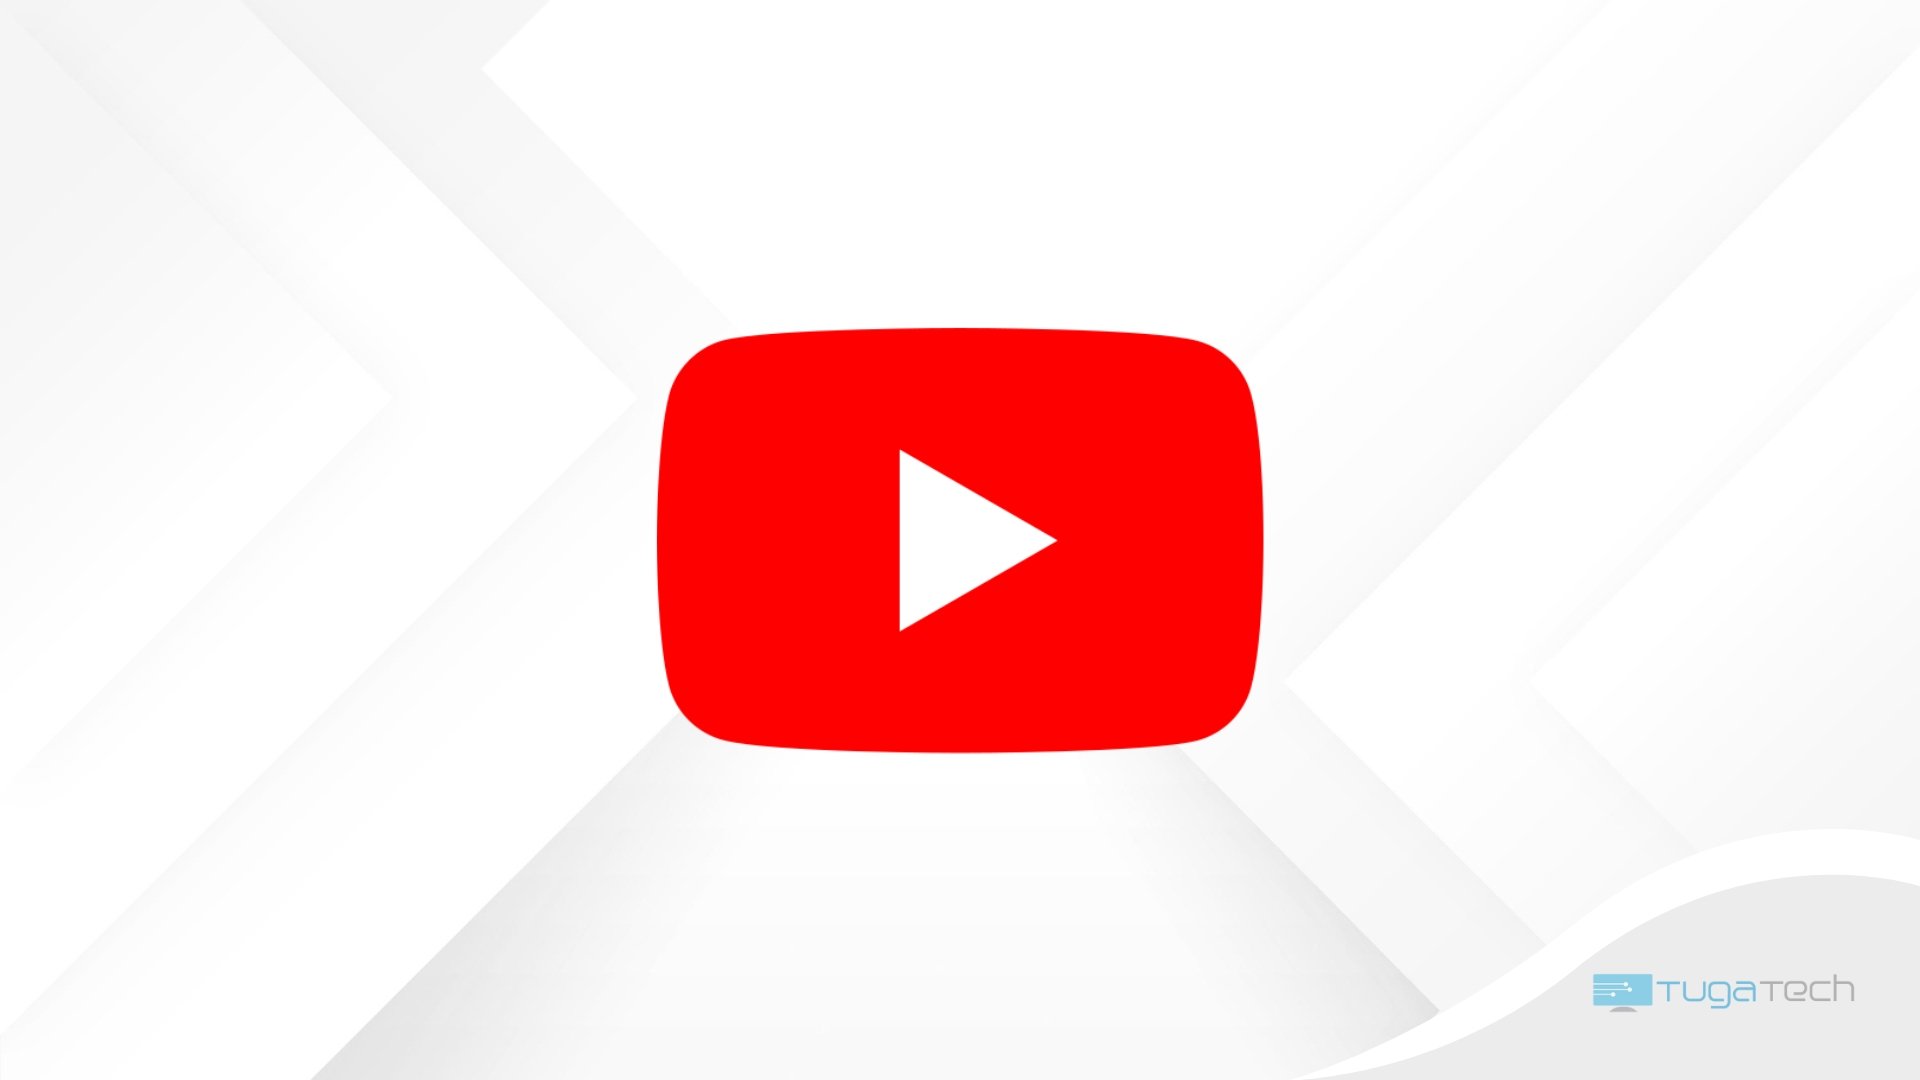 Logo do YouTube sobre fundo branco